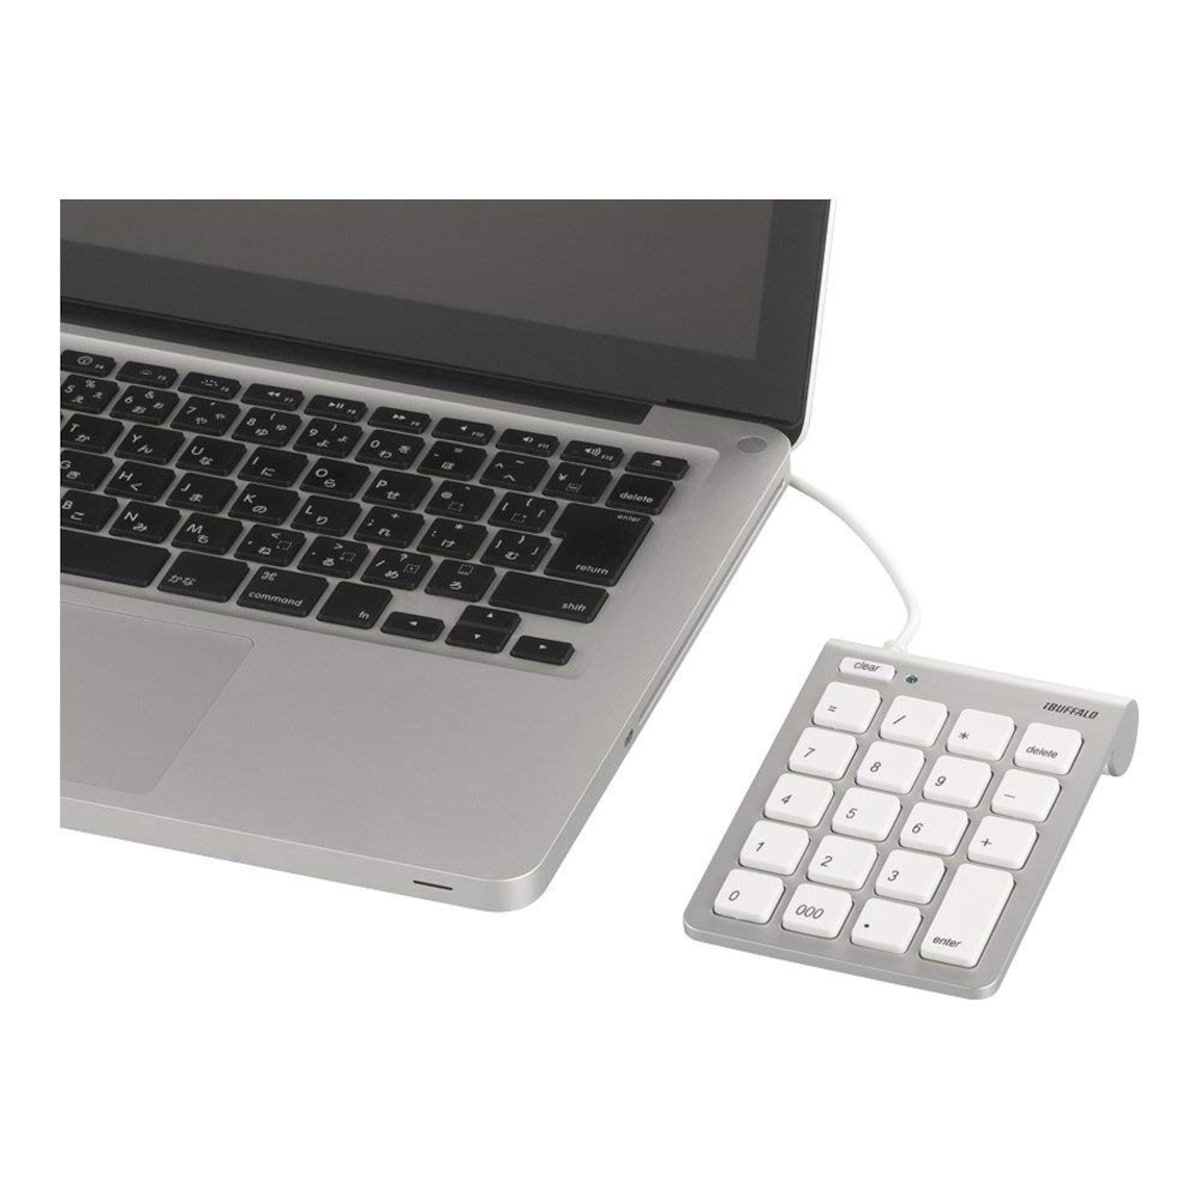  テンキーボード Mac用画像2 